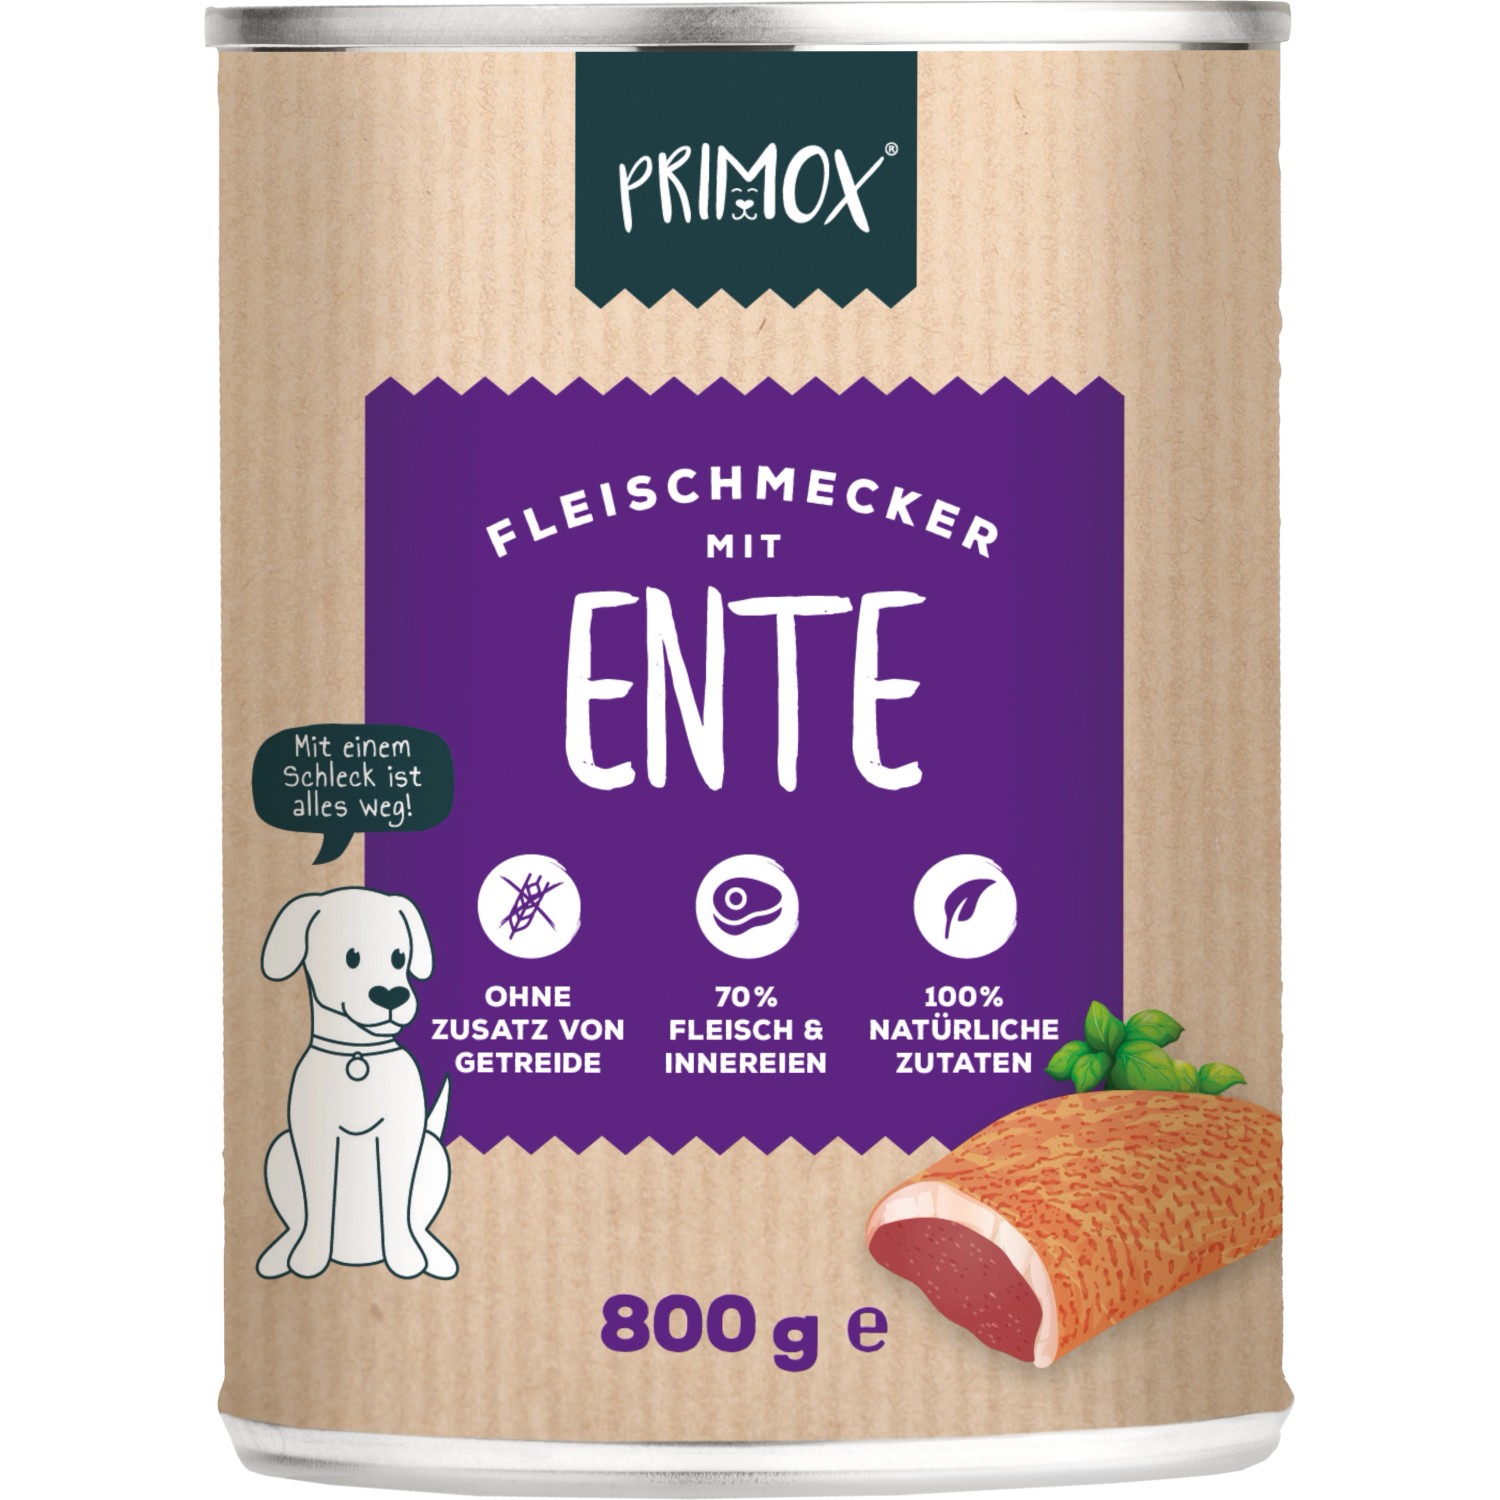 Primox Fleischmecker Ente 800 g